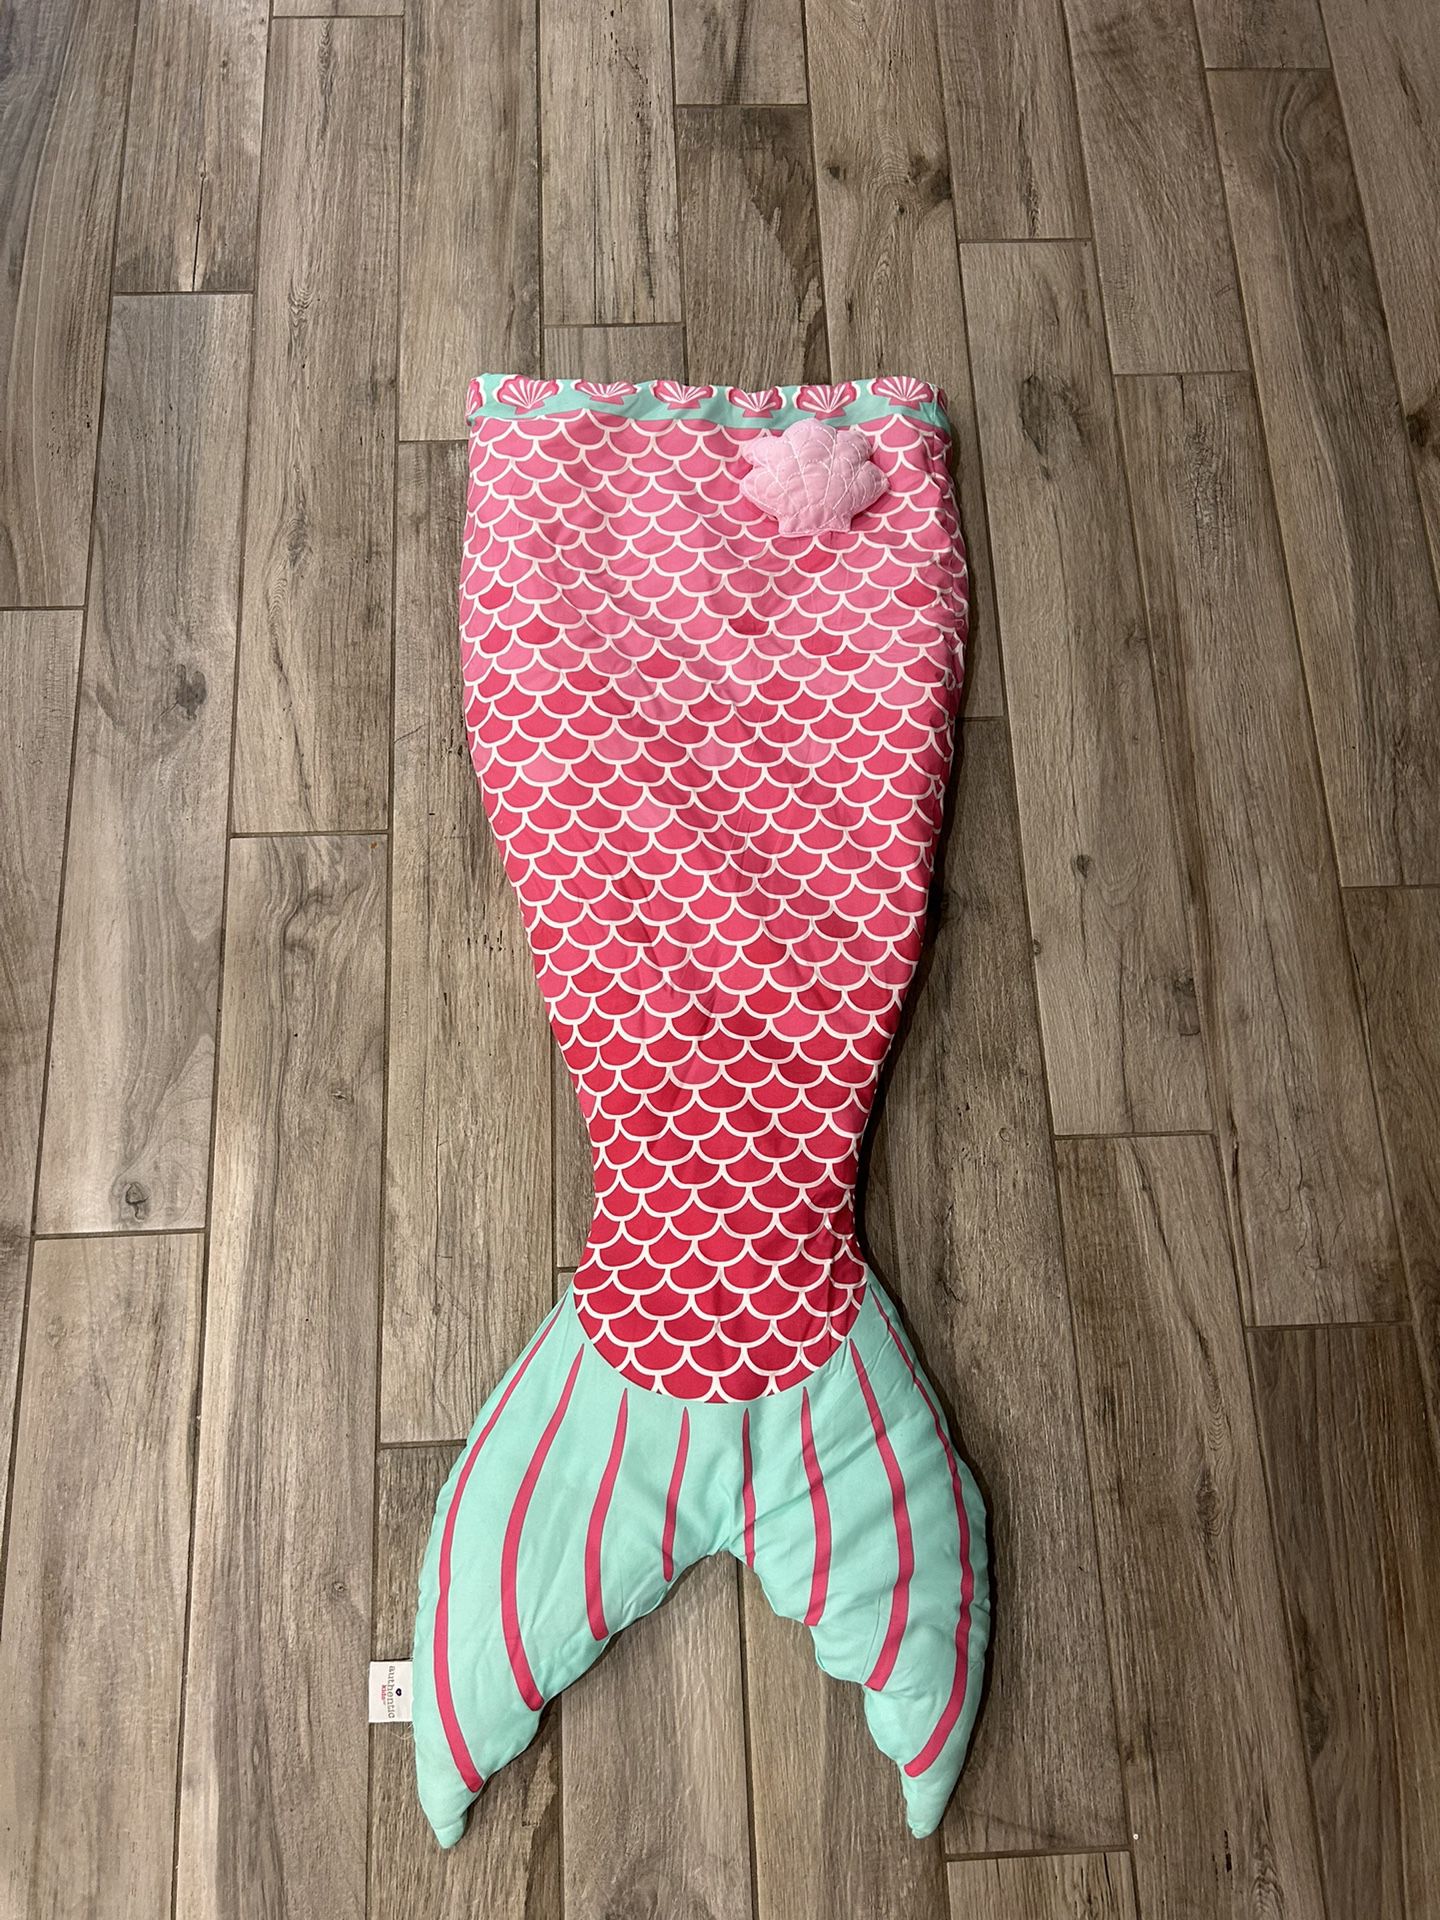 Mermaid Tail Sleeping Bag/blanket 